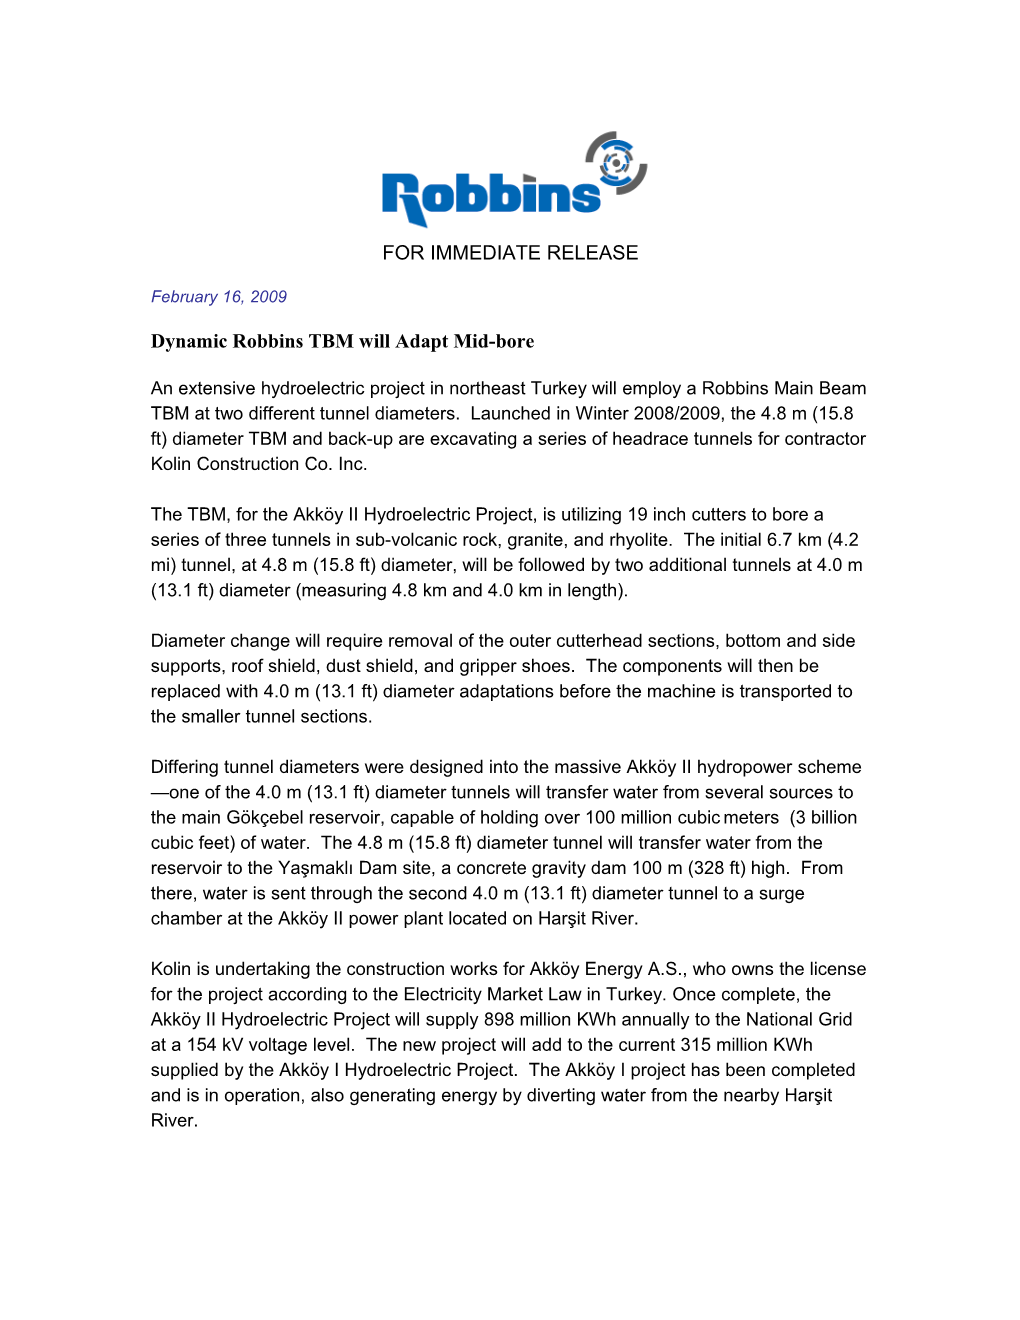 Dynamic Robbins TBM Will Adapt Mid-Bore